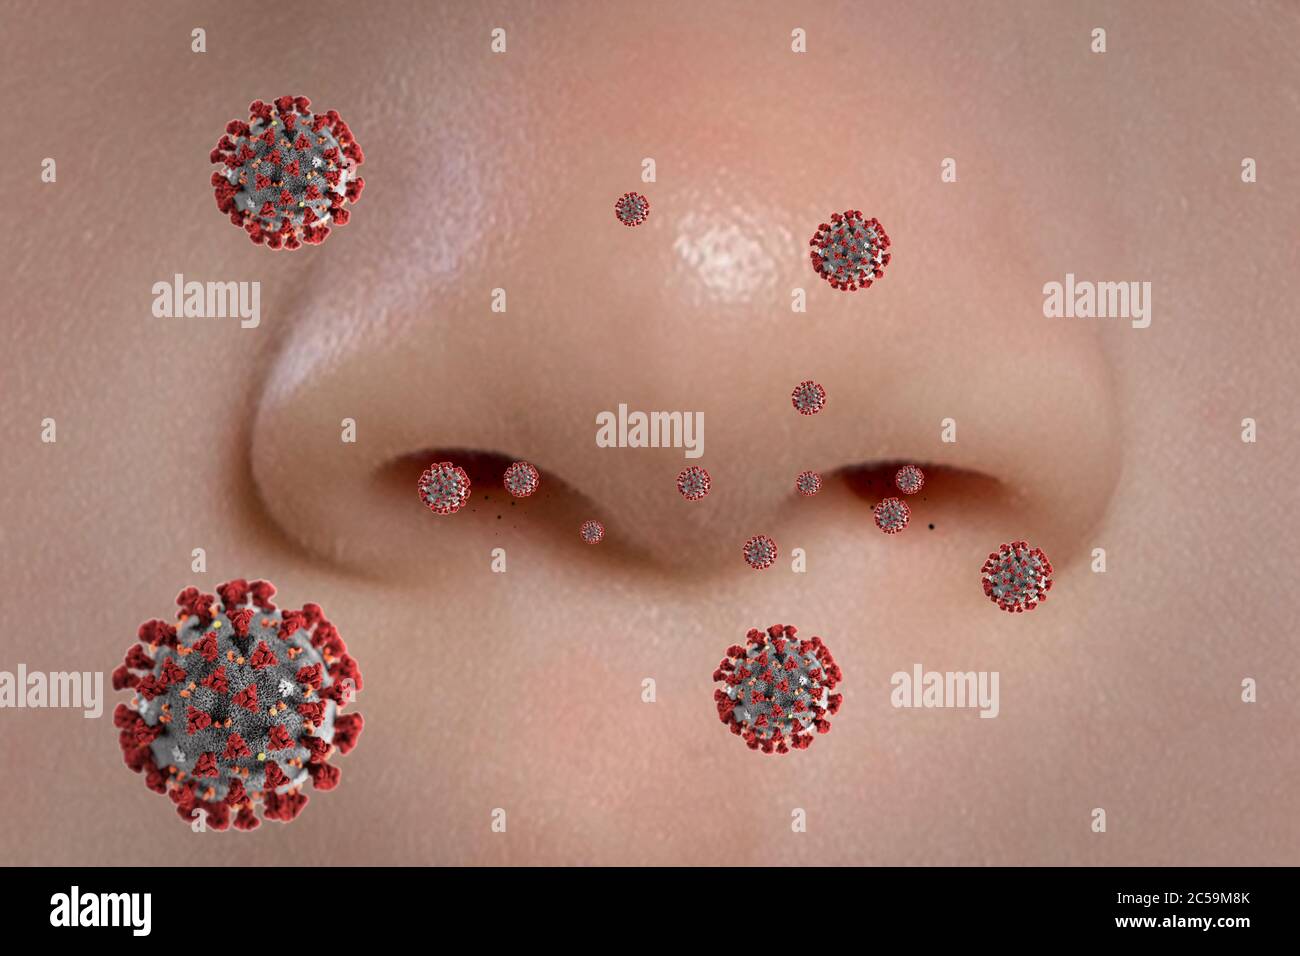 Die Nase des Patienten beim Einatmen oder Ausatmen von Viren Stockfoto